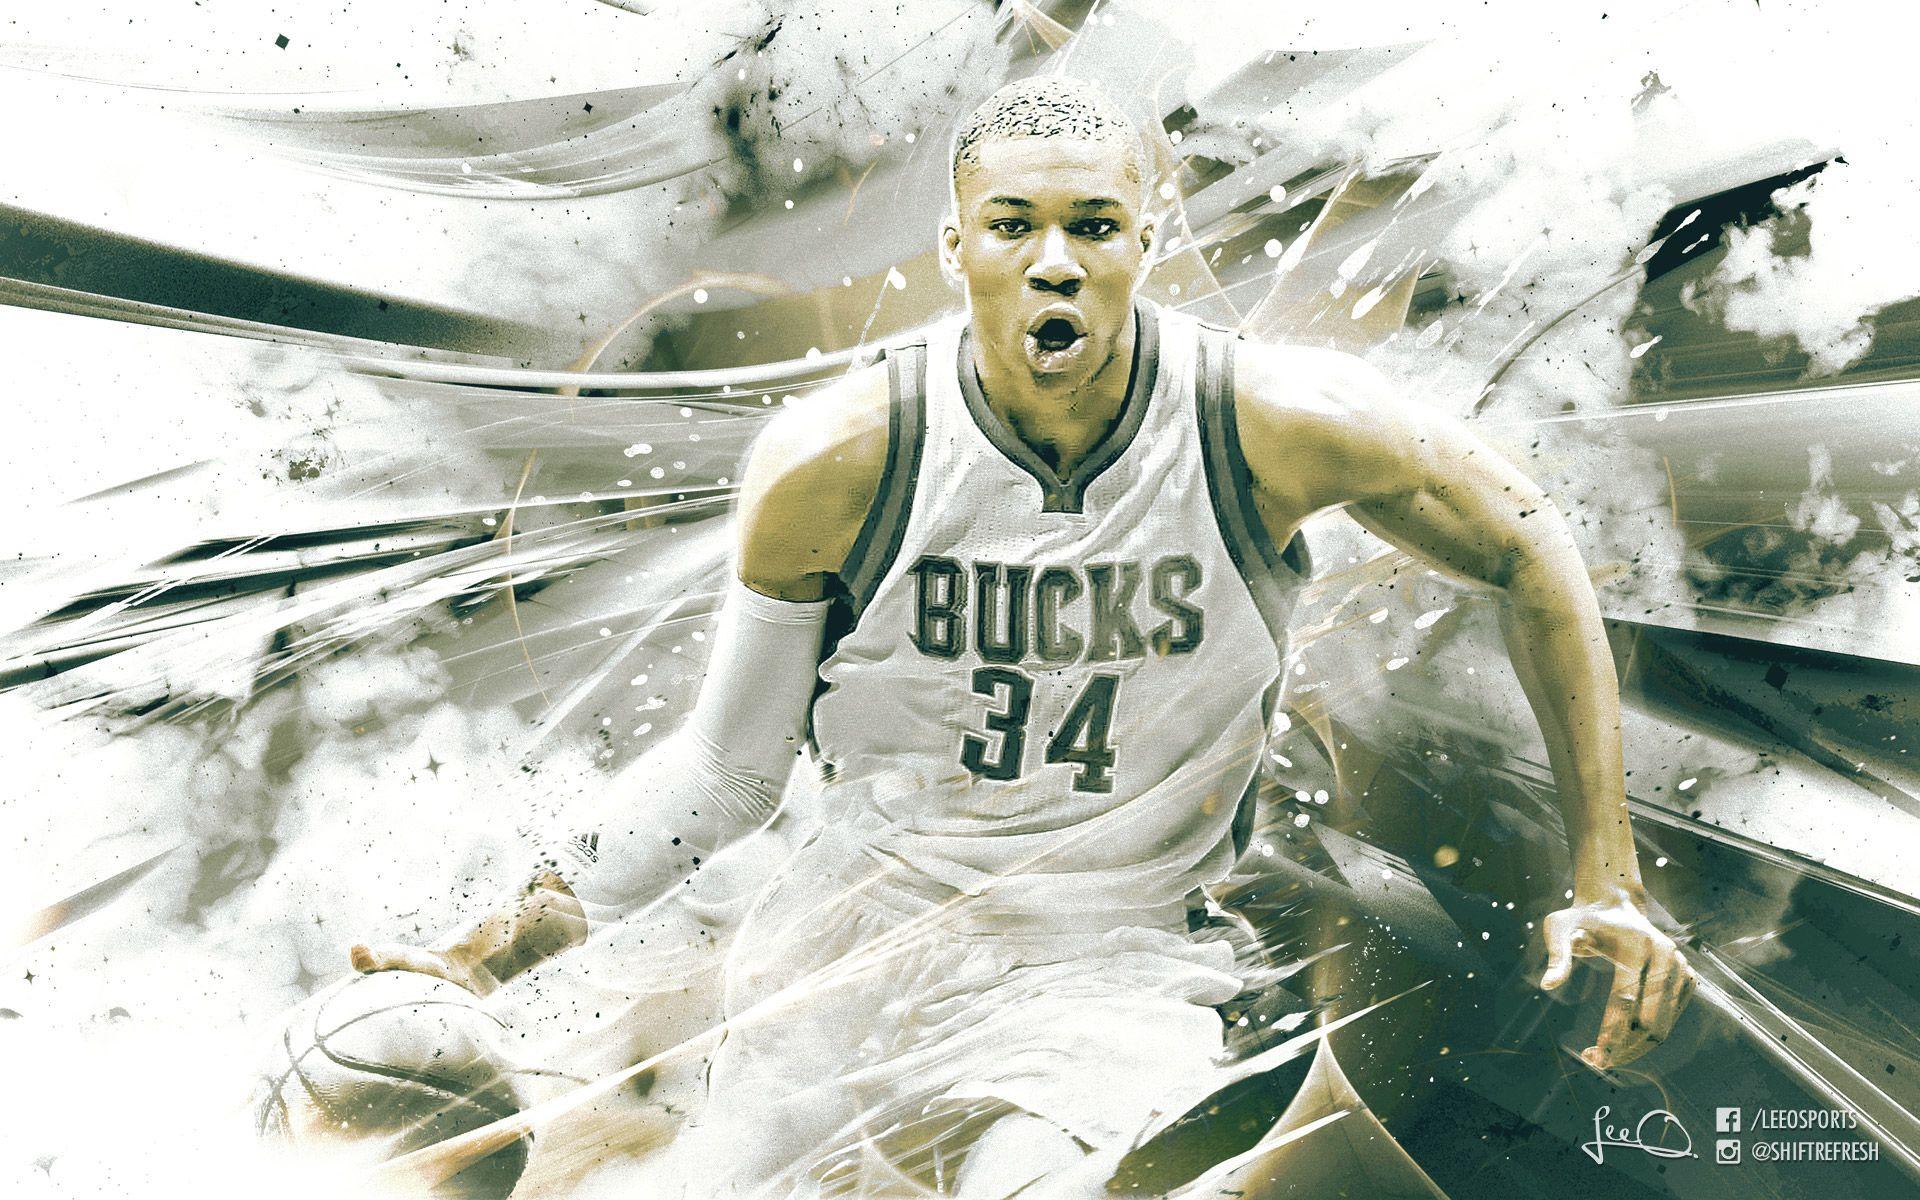 Milwaukee Bucks Wallpaper. Basketball Wallpaper at